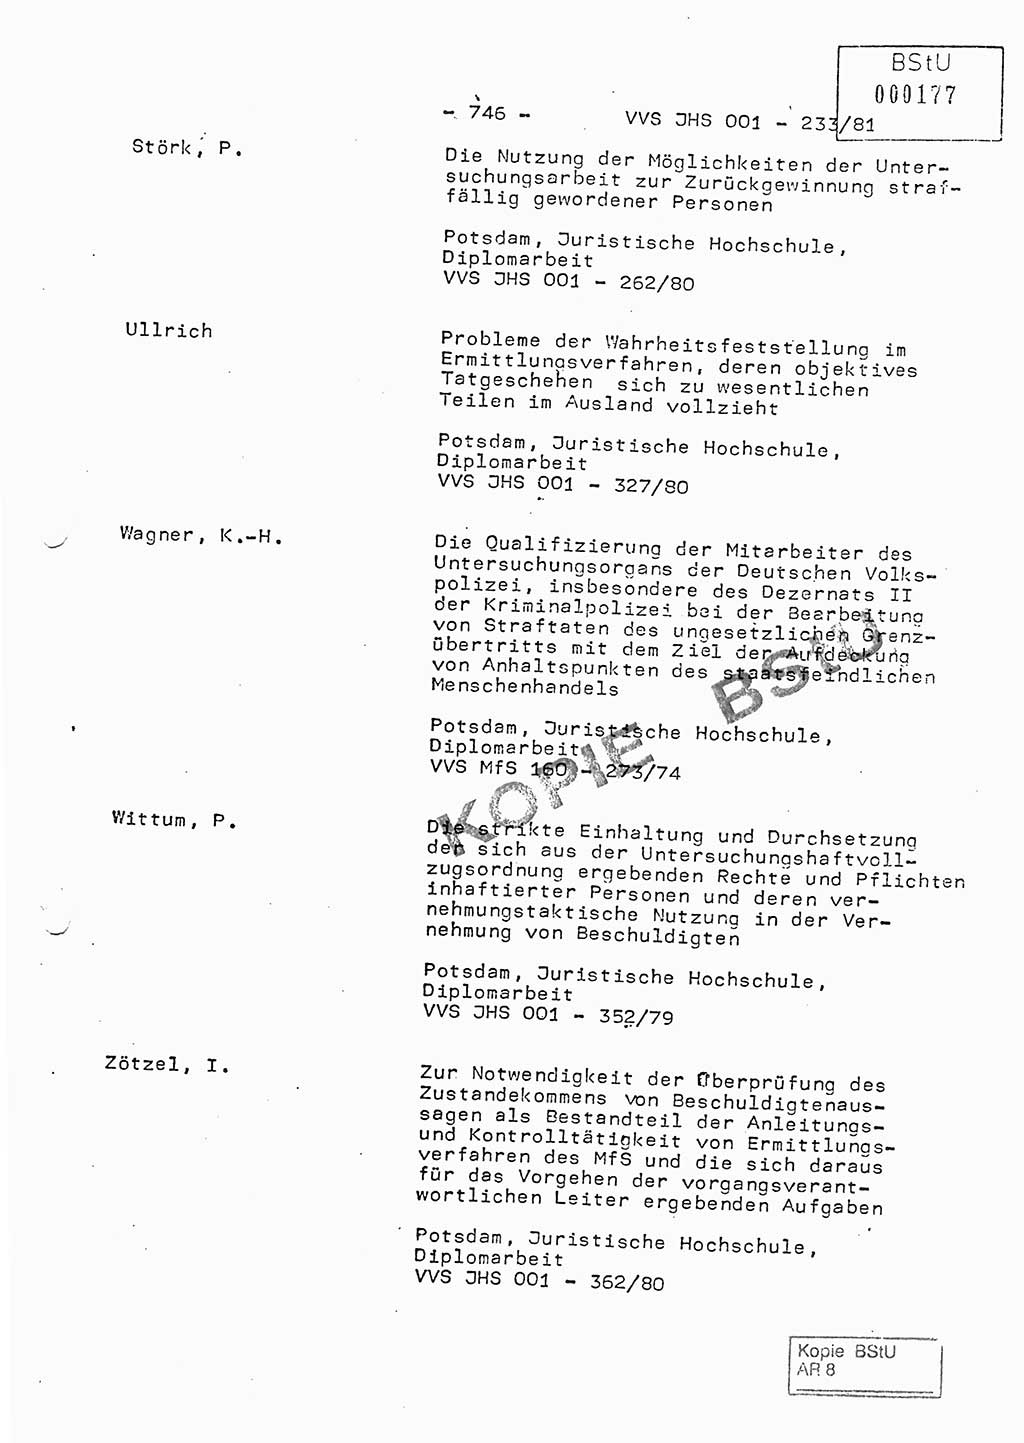 Dissertation Oberstleutnant Horst Zank (JHS), Oberstleutnant Dr. Karl-Heinz Knoblauch (JHS), Oberstleutnant Gustav-Adolf Kowalewski (HA Ⅸ), Oberstleutnant Wolfgang Plötner (HA Ⅸ), Ministerium für Staatssicherheit (MfS) [Deutsche Demokratische Republik (DDR)], Juristische Hochschule (JHS), Vertrauliche Verschlußsache (VVS) o001-233/81, Potsdam 1981, Blatt 746 (Diss. MfS DDR JHS VVS o001-233/81 1981, Bl. 746)